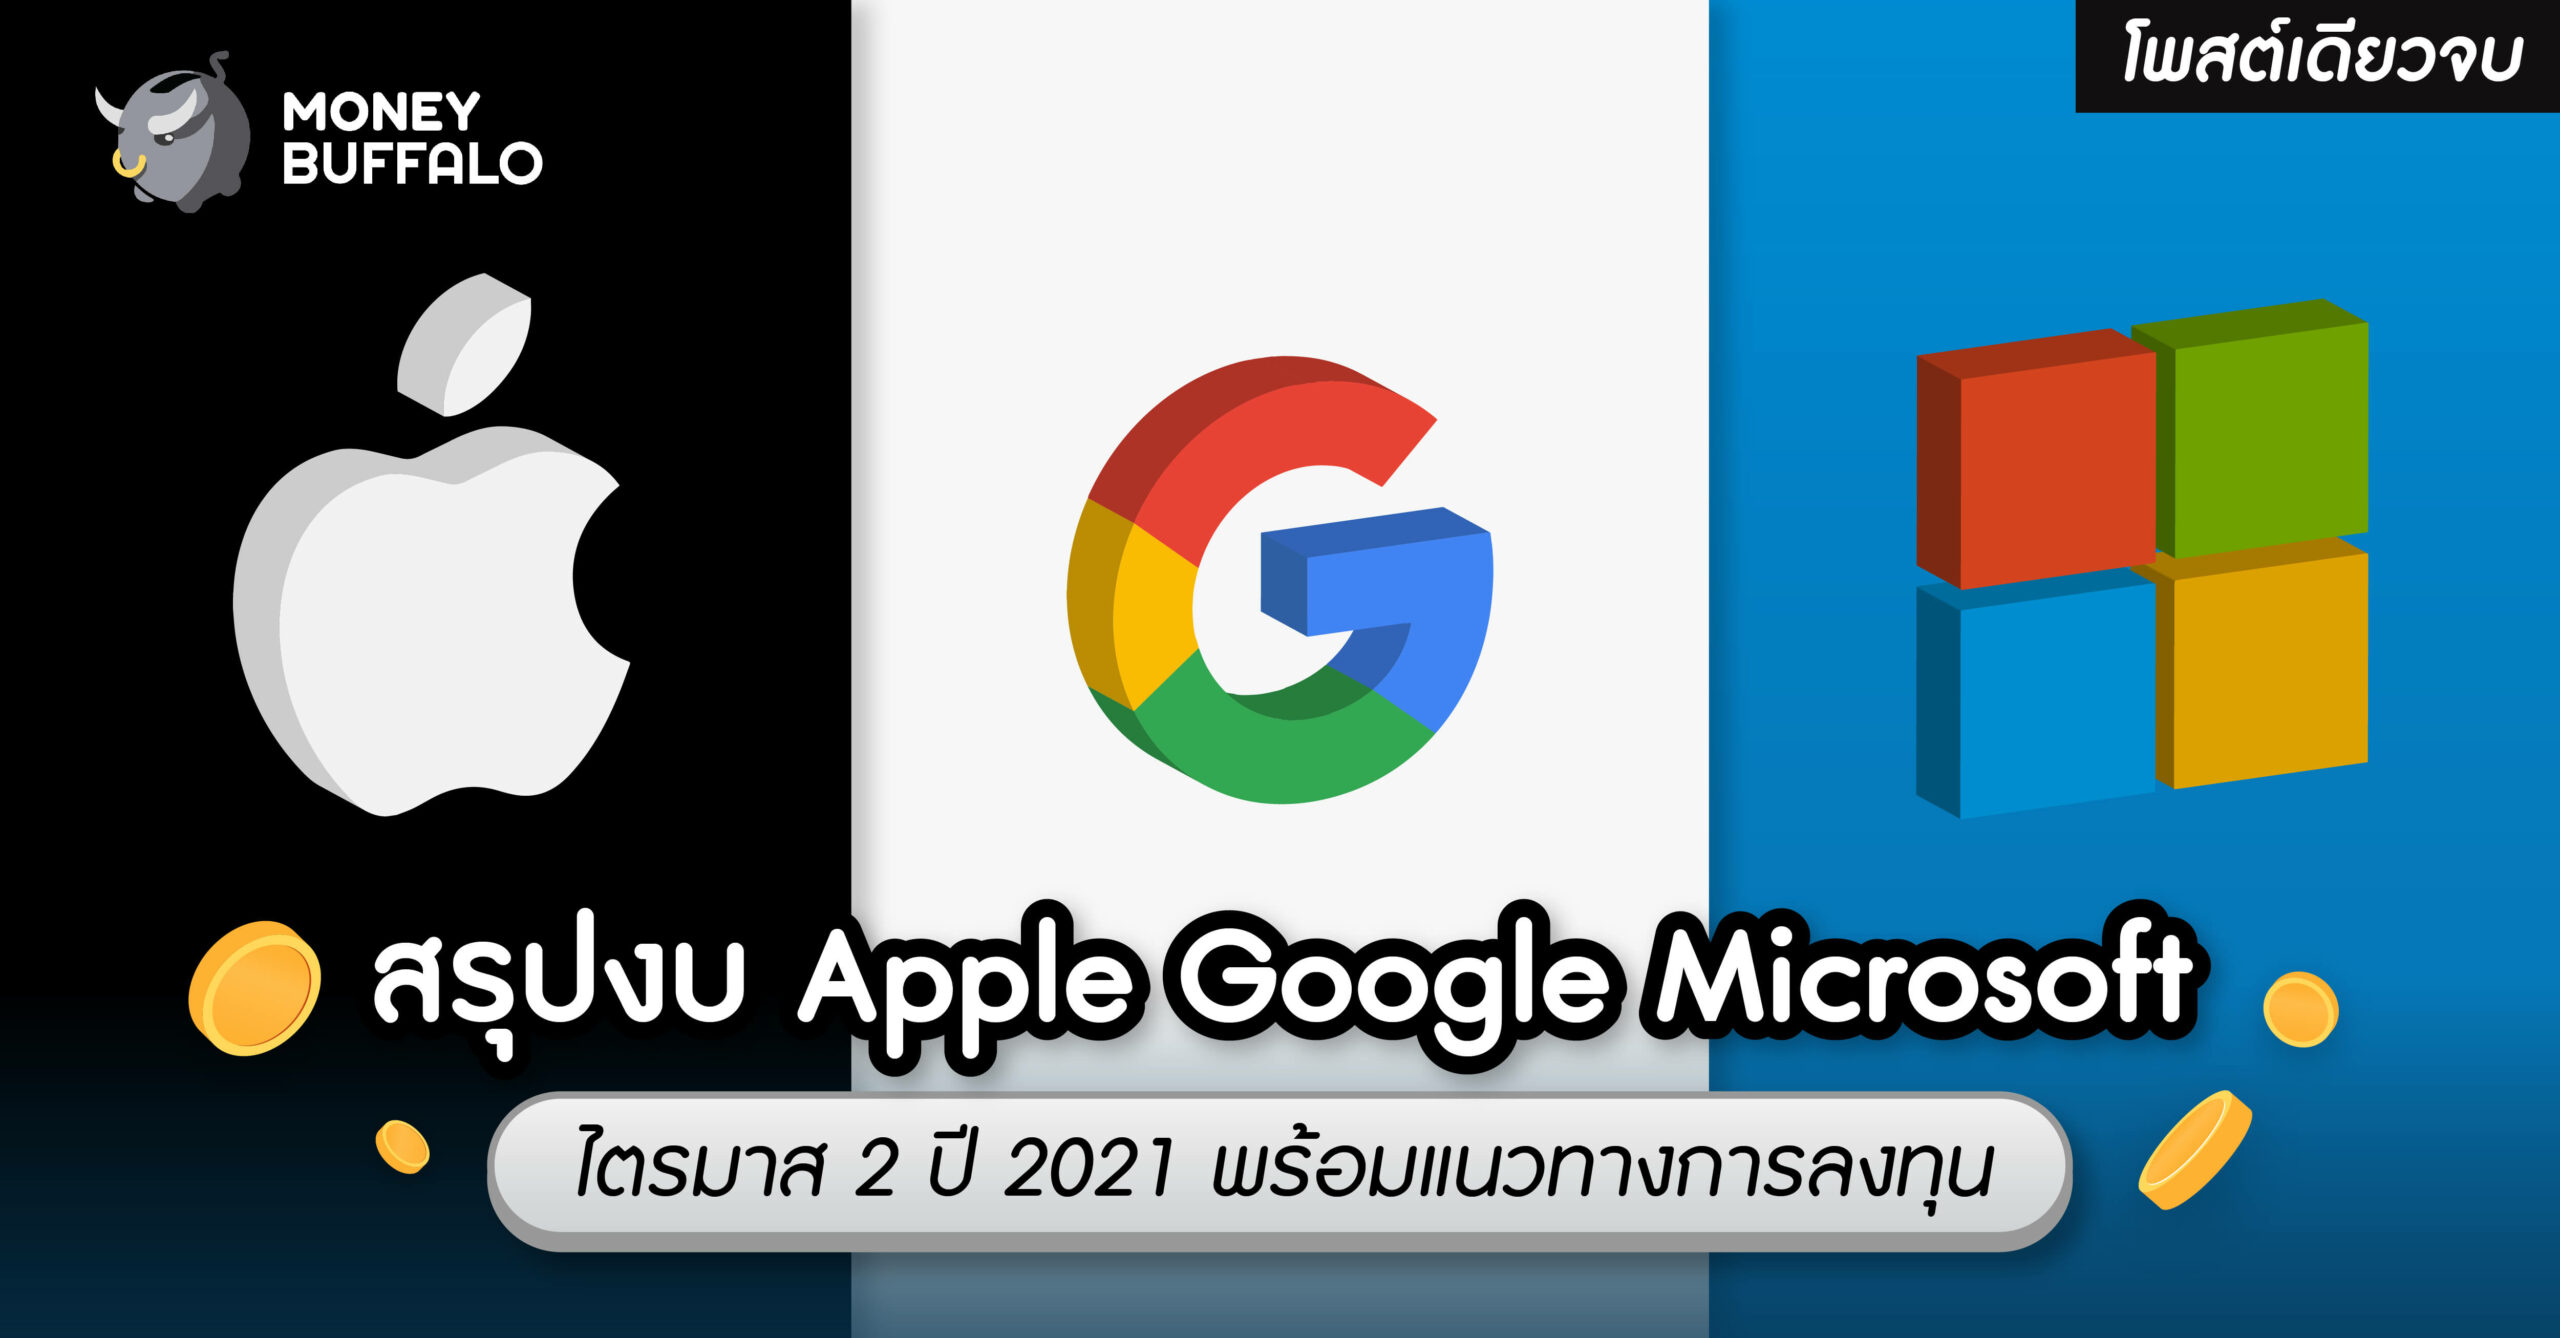 [โพสต์เดียวจบ] "สรุปงบ Apple Google Microsoft" ไตรมาส 2 ปี 2021 พร้อมแนวทางการลงทุน